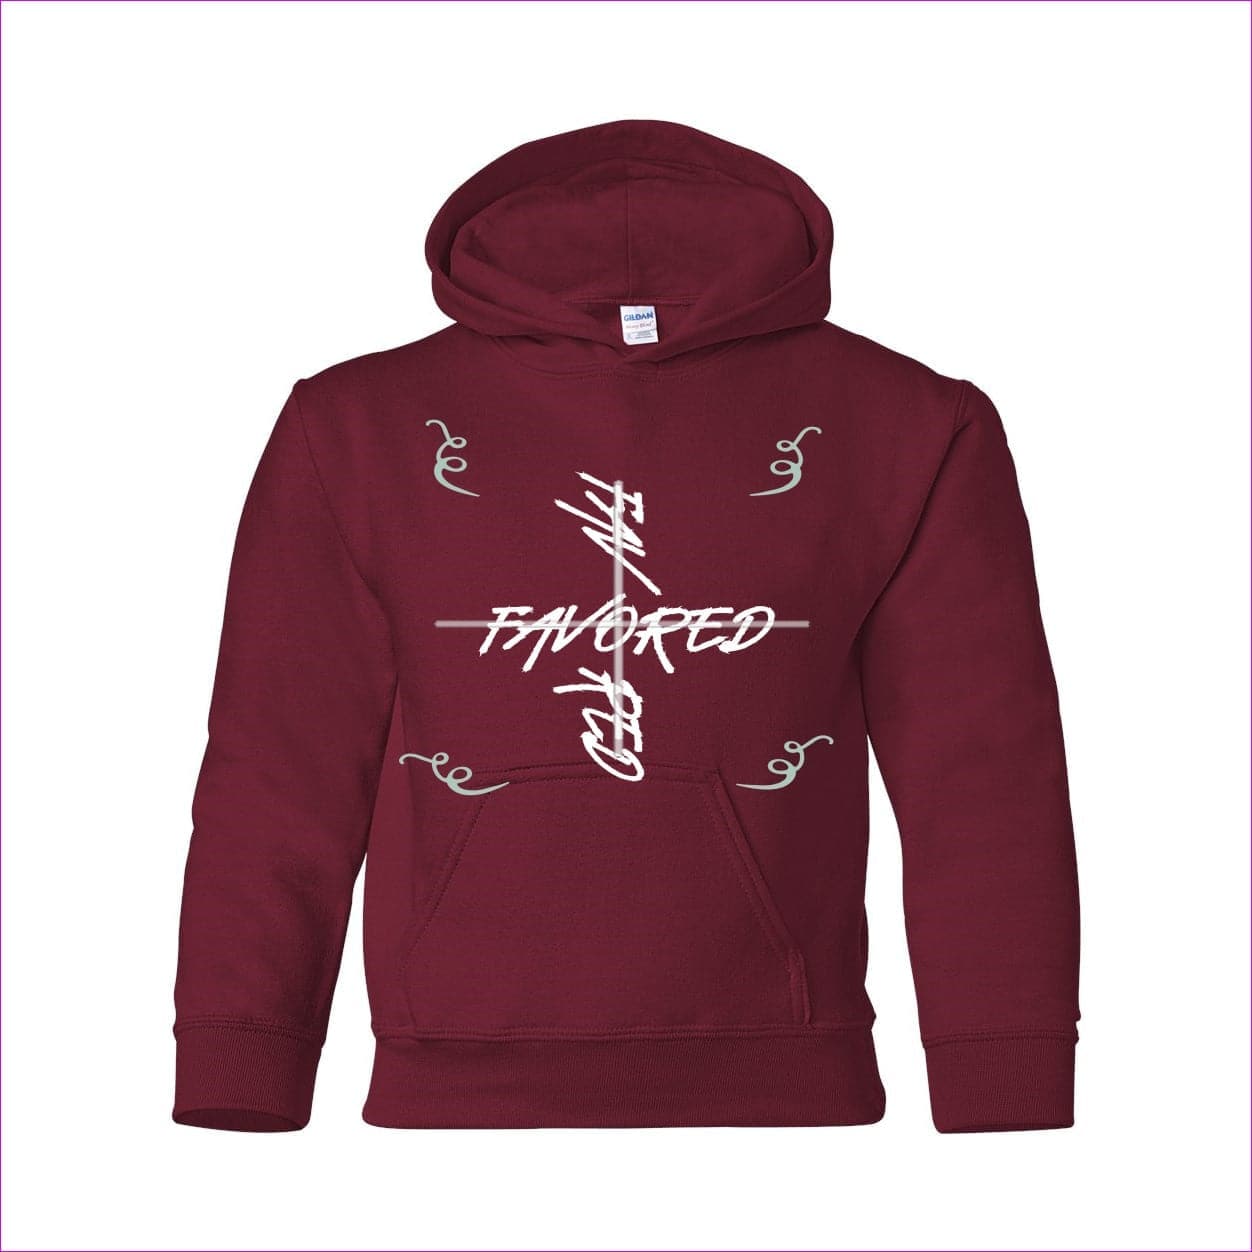 Garnet Favored 2 Heavy Blend Youth Hooded Sweatshirt - kids hoodies at TFC&H Co.